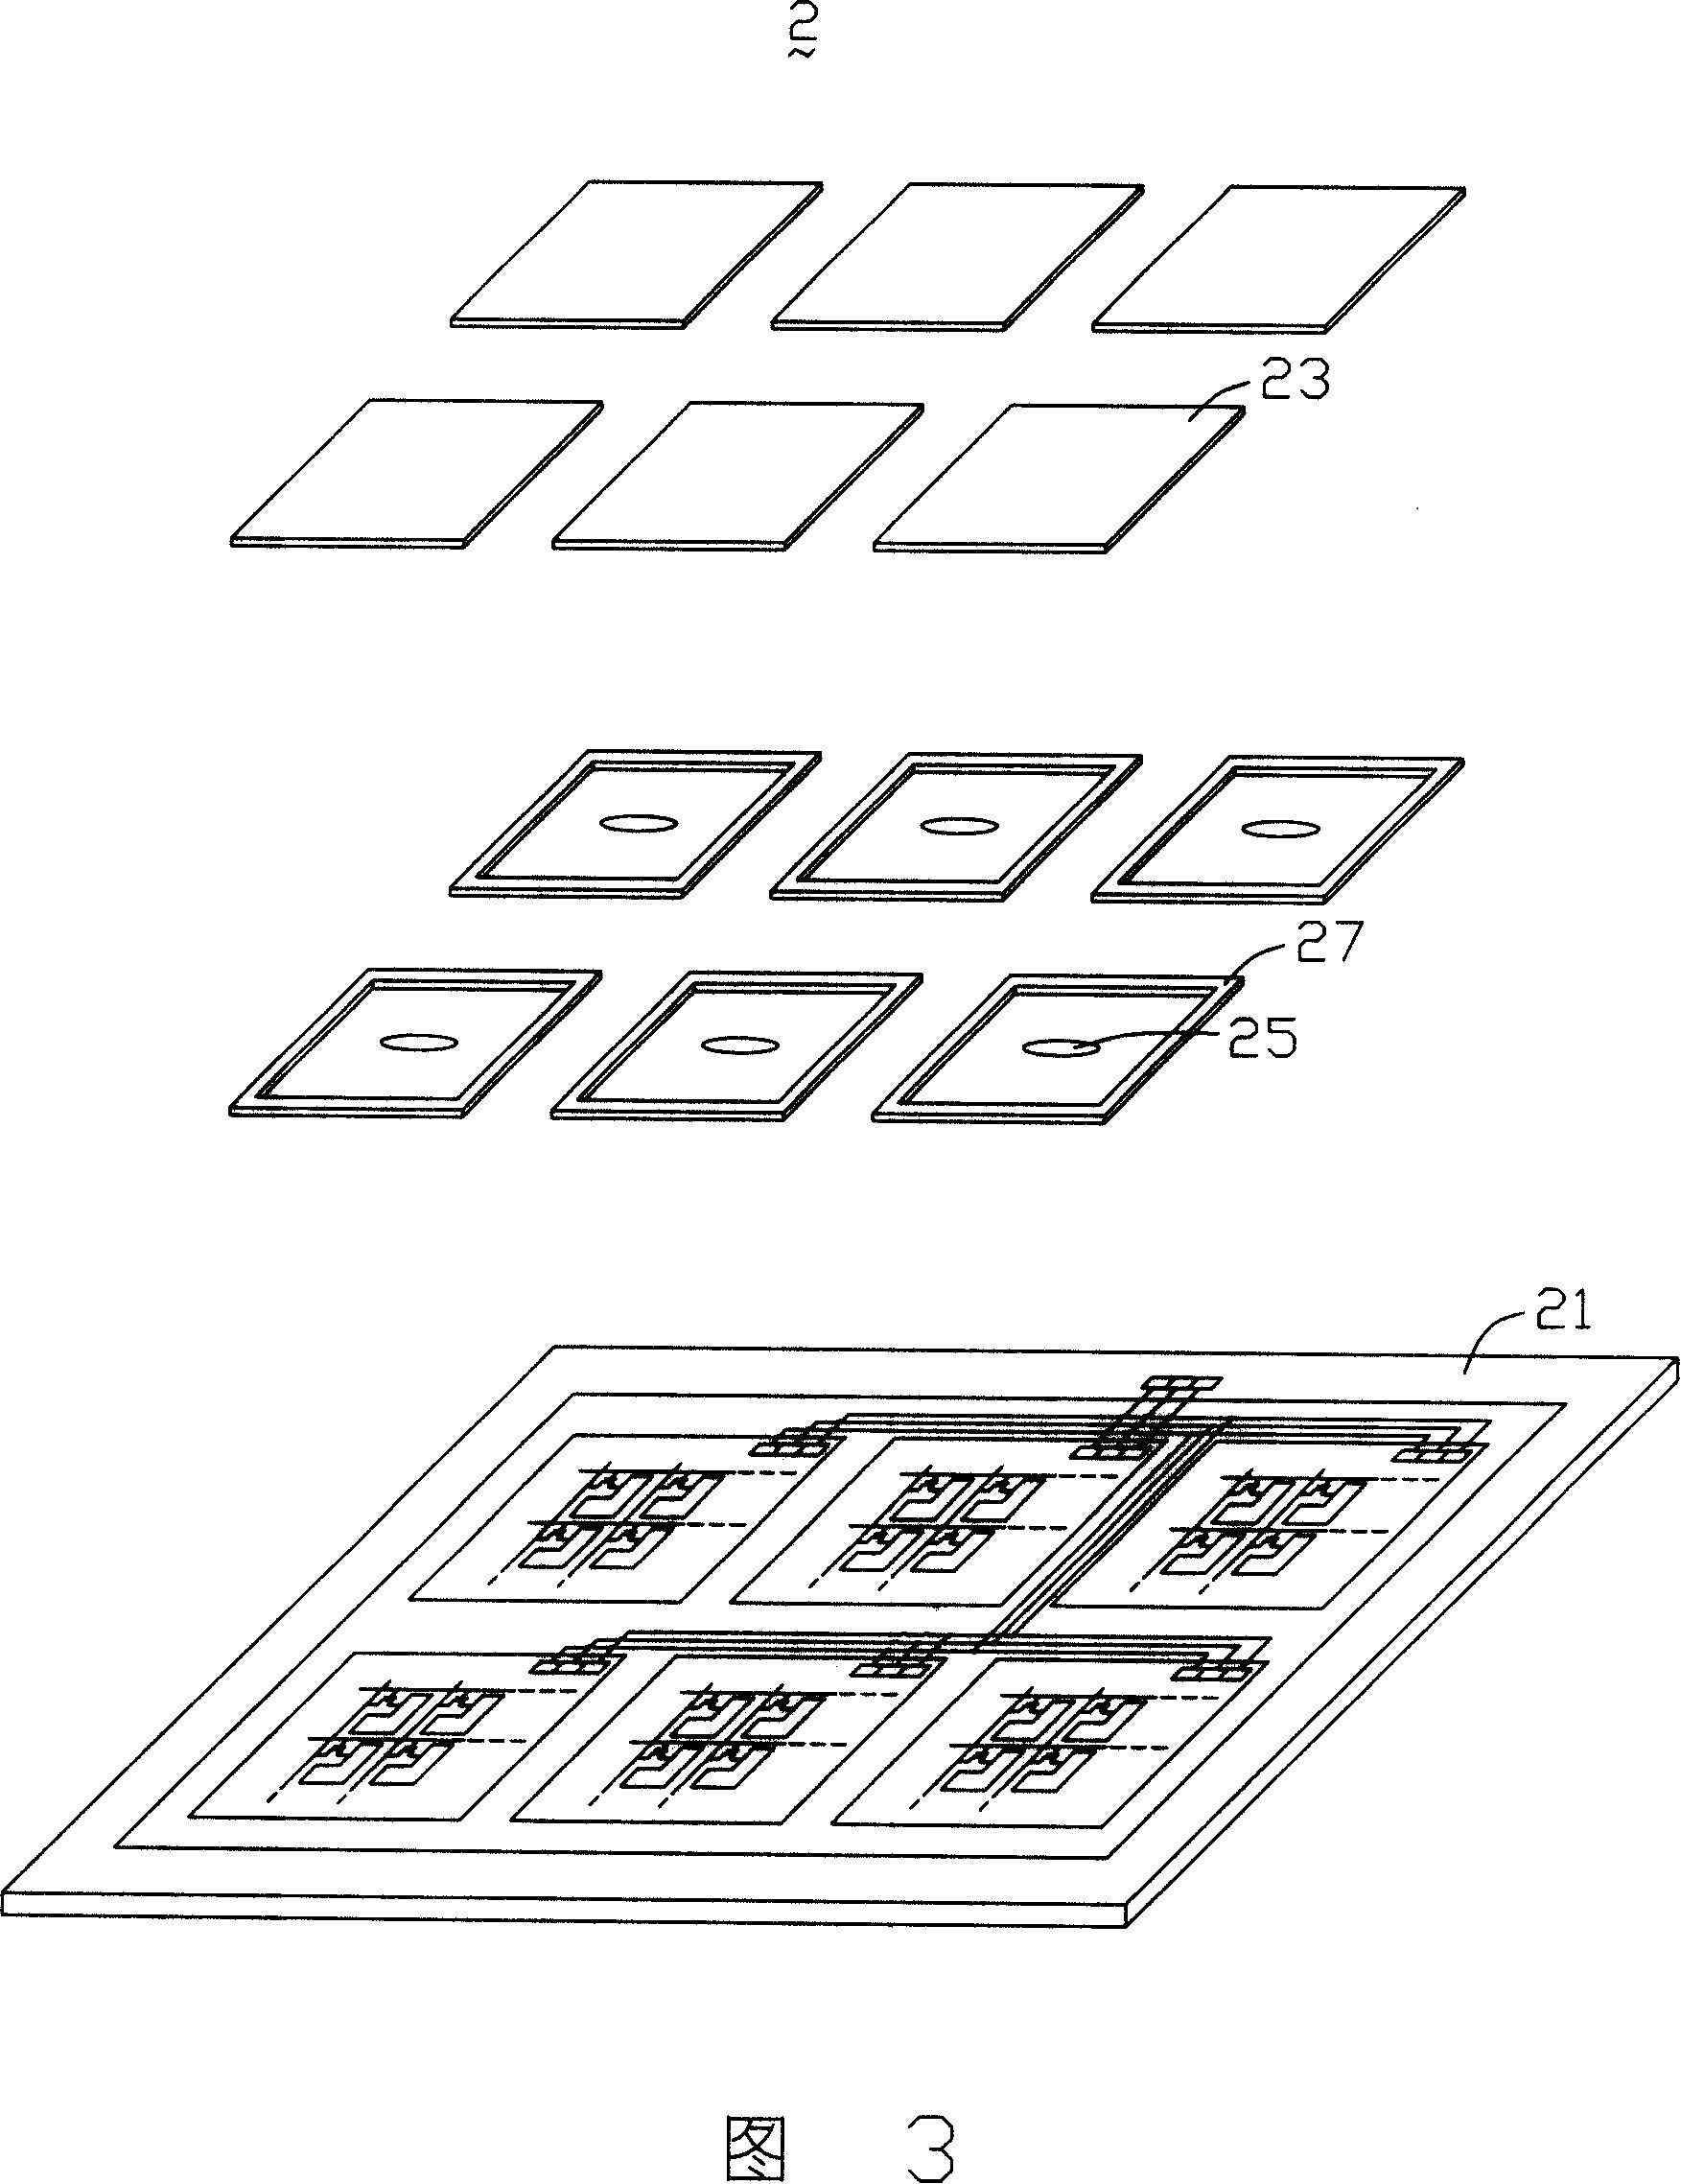 Liquid crystal display panel and method for producing same